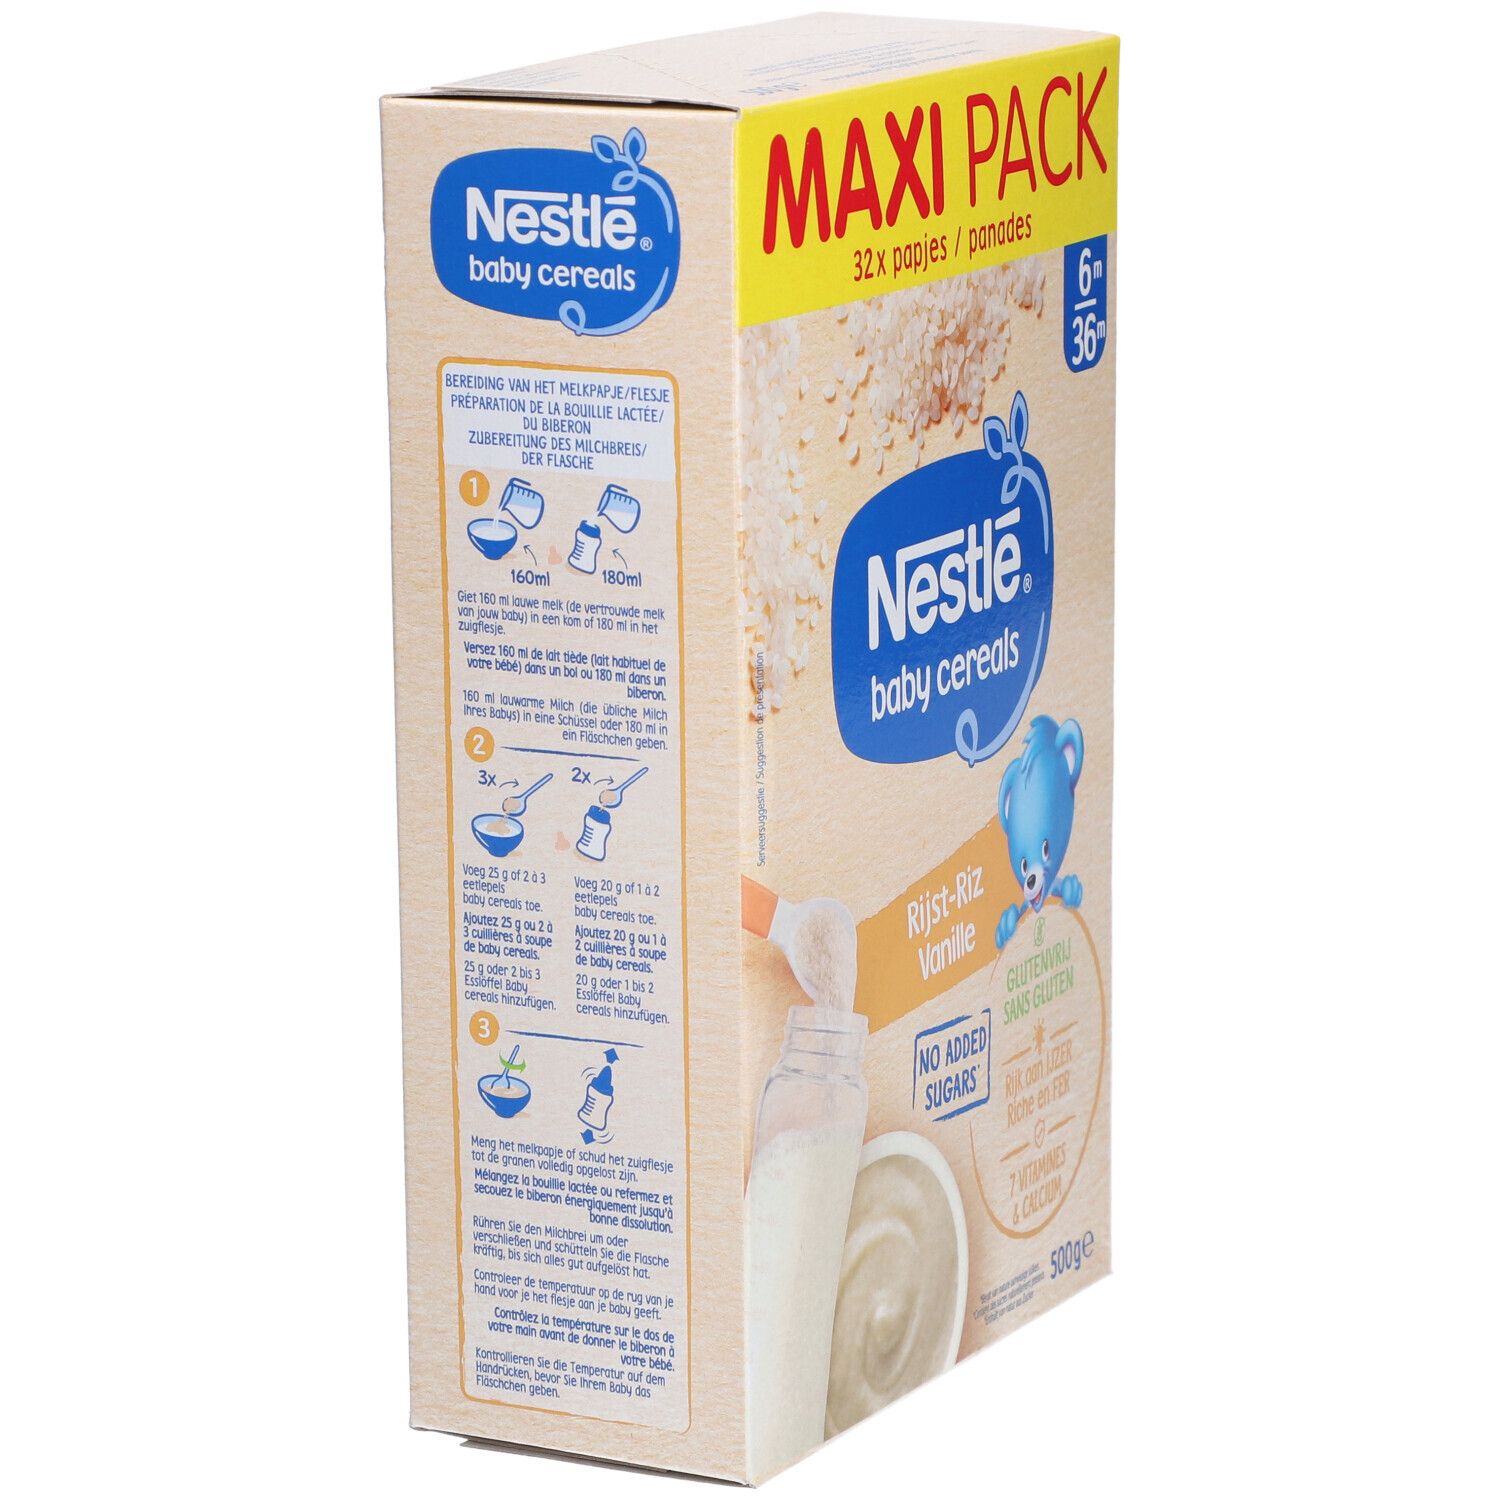 Nestle Baby Cereals® Riz-Vanille